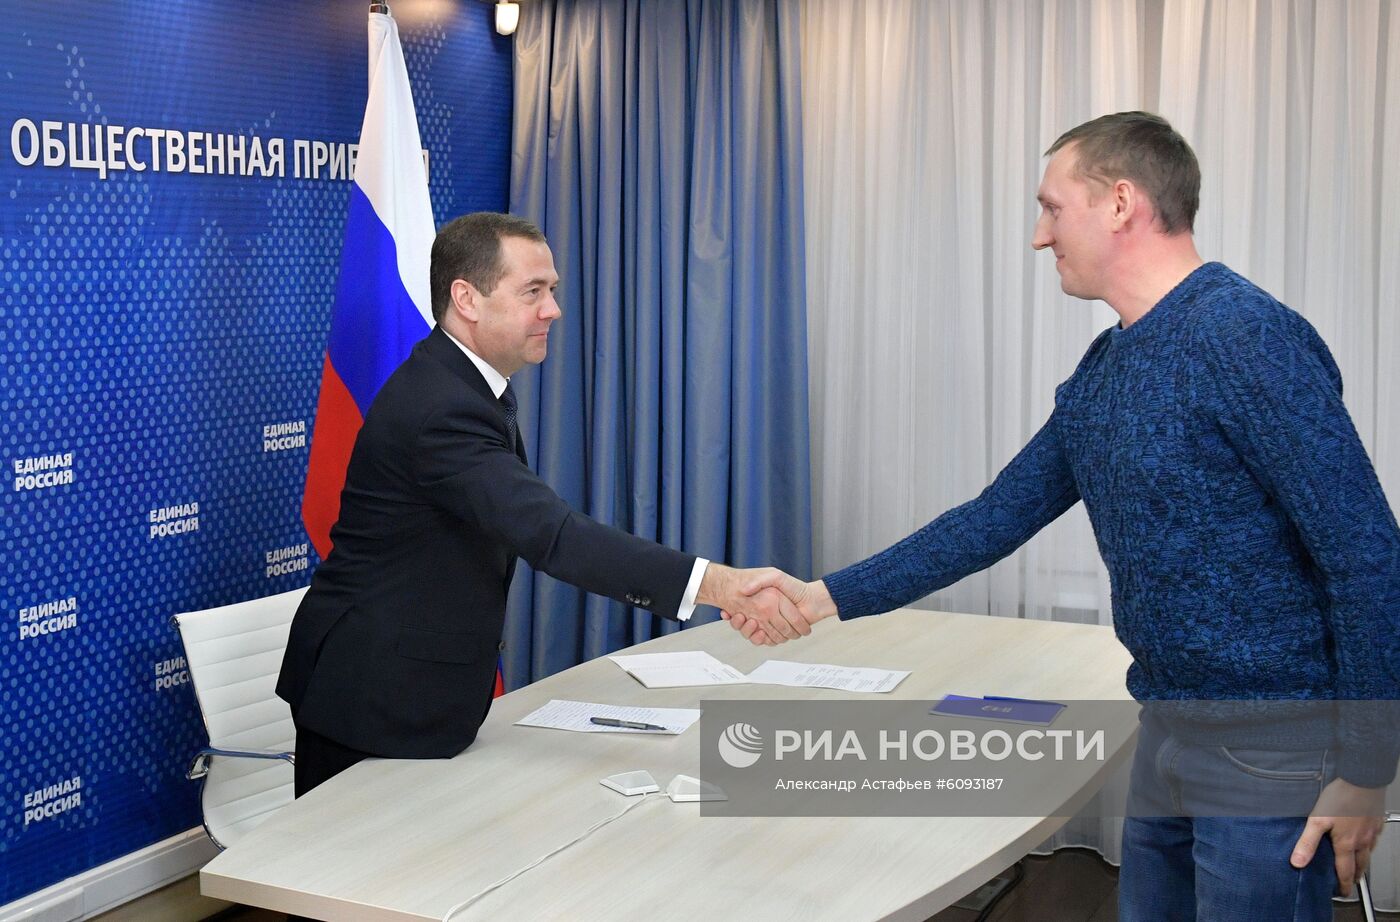 Премьер-министр РФ, председатель партии "Единая Россия" Д. Медведев провел прием граждан в приемной партии ЕР в Москве